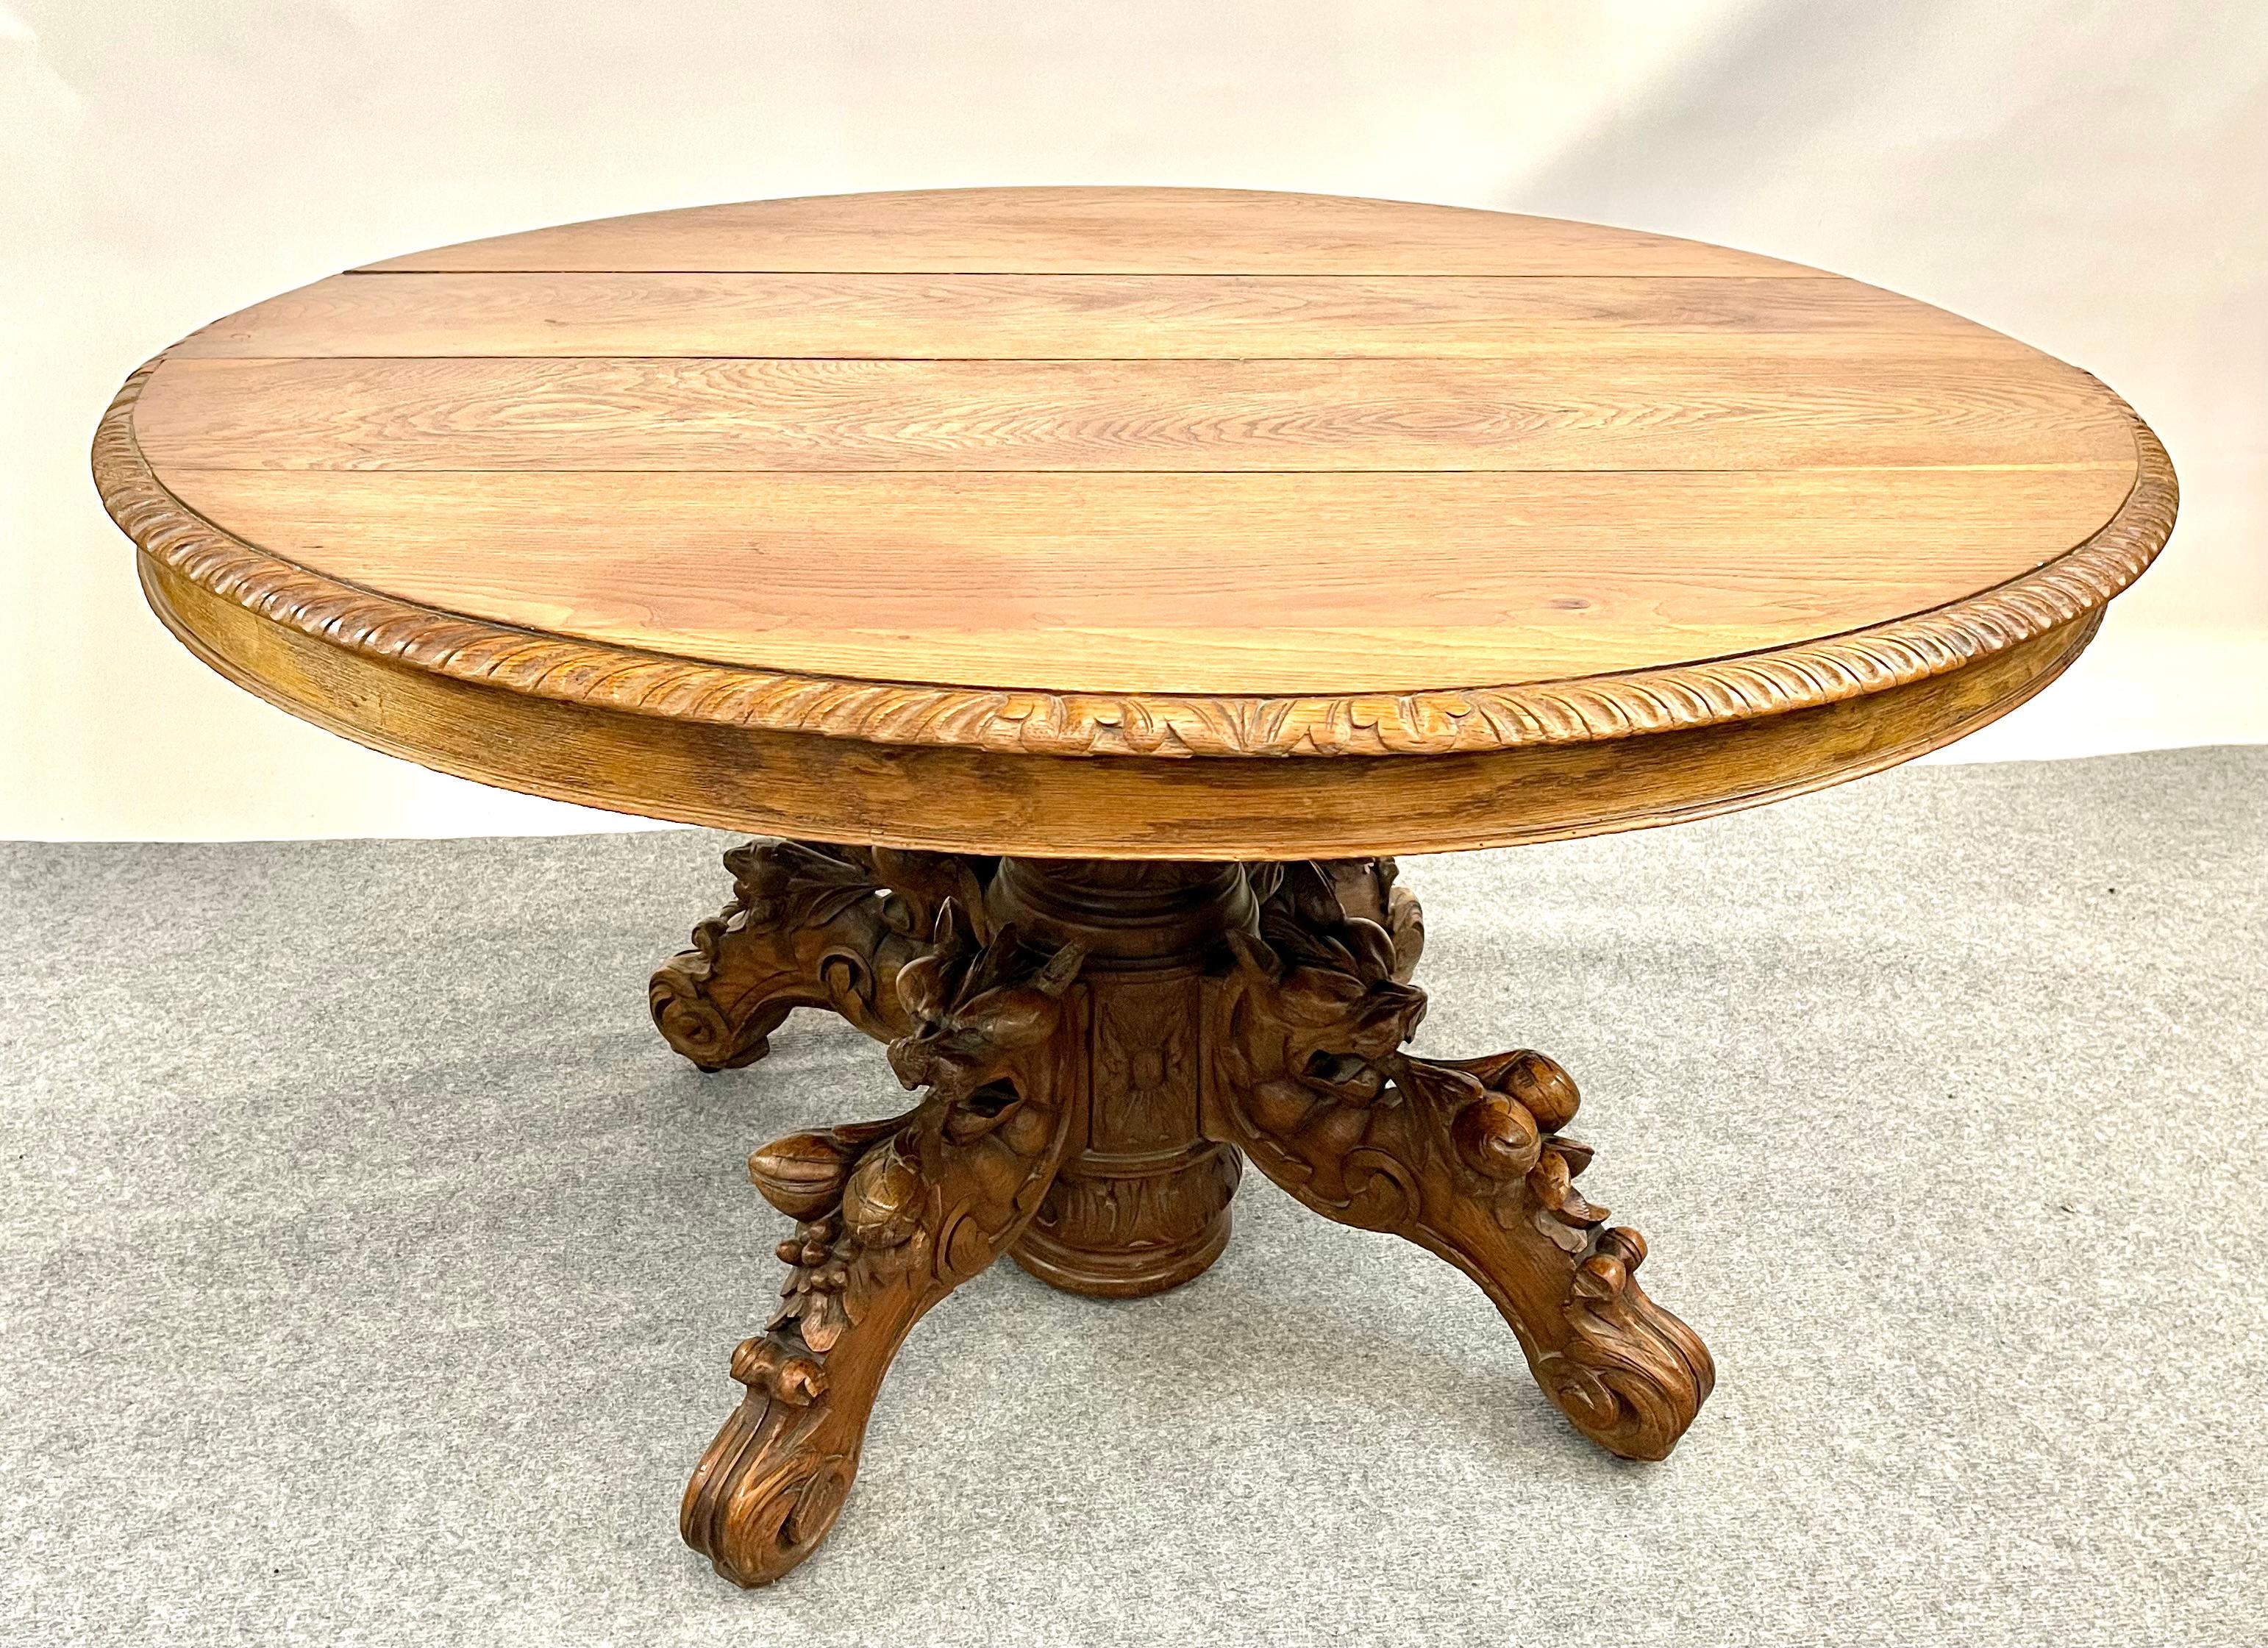 Dieser klassische Jagd- oder Schwarzwaldtisch kommt aus Frankreich und stammt aus den späten 1800er Jahren. 

Dieses Exemplar ist ungewöhnlich schön, mit komplizierten Schnitzereien an den Füßen. Der Tisch ist aus massiver und furnierter Eiche in